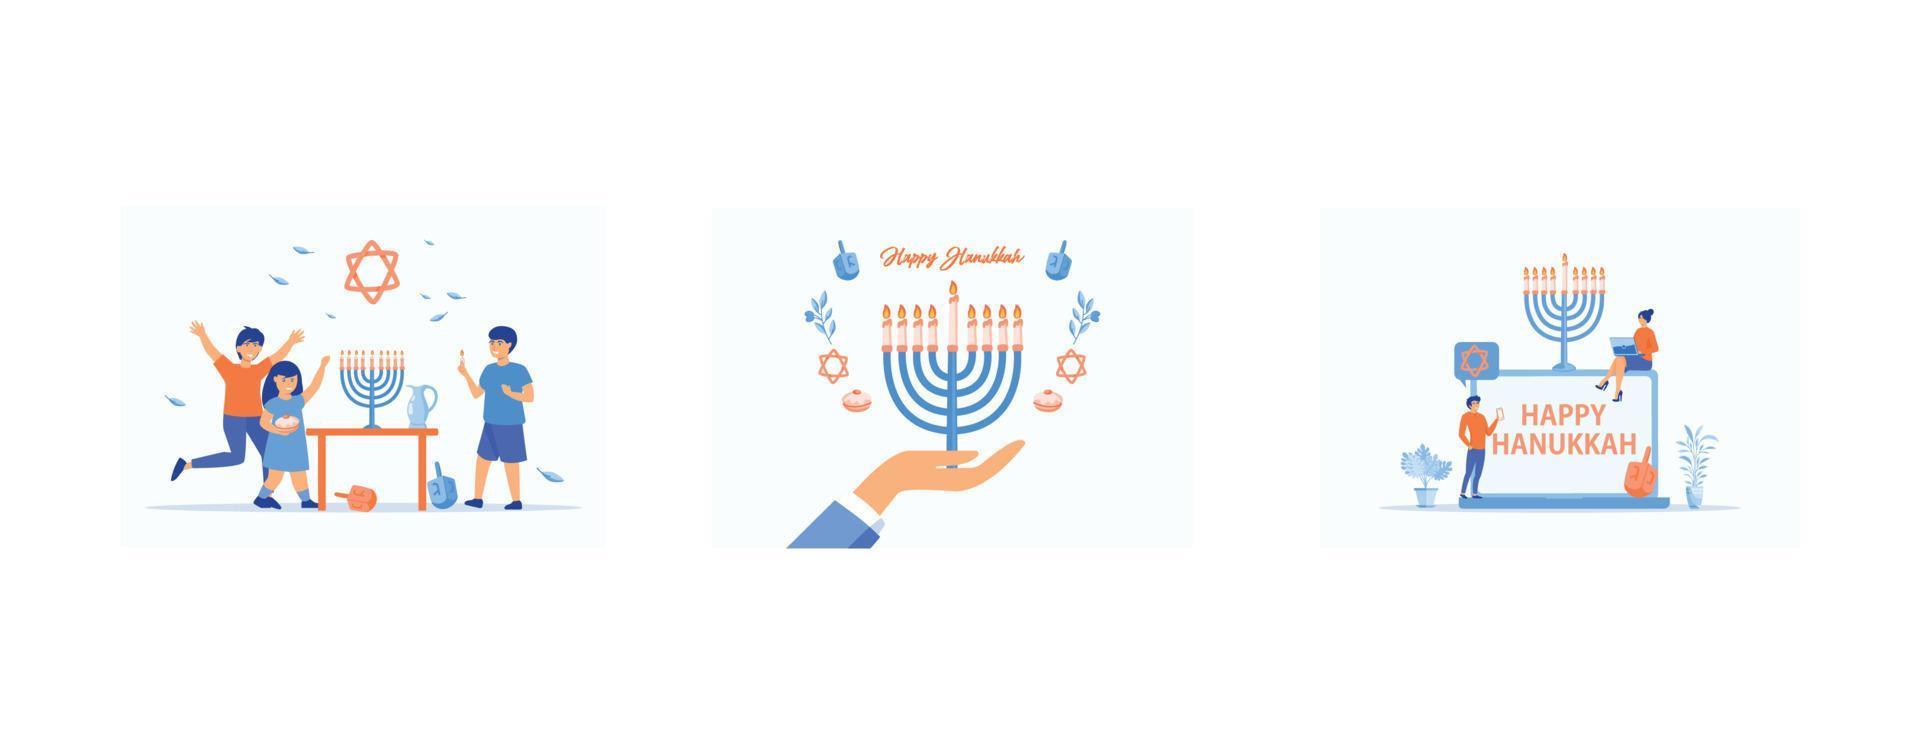 crianças celebrando o hanukkah acendendo velas na menorá, menorá de hanukkah, feriado judaico tradicional com pessoas minúsculas e símbolos, definir ilustração moderna de vetor plano